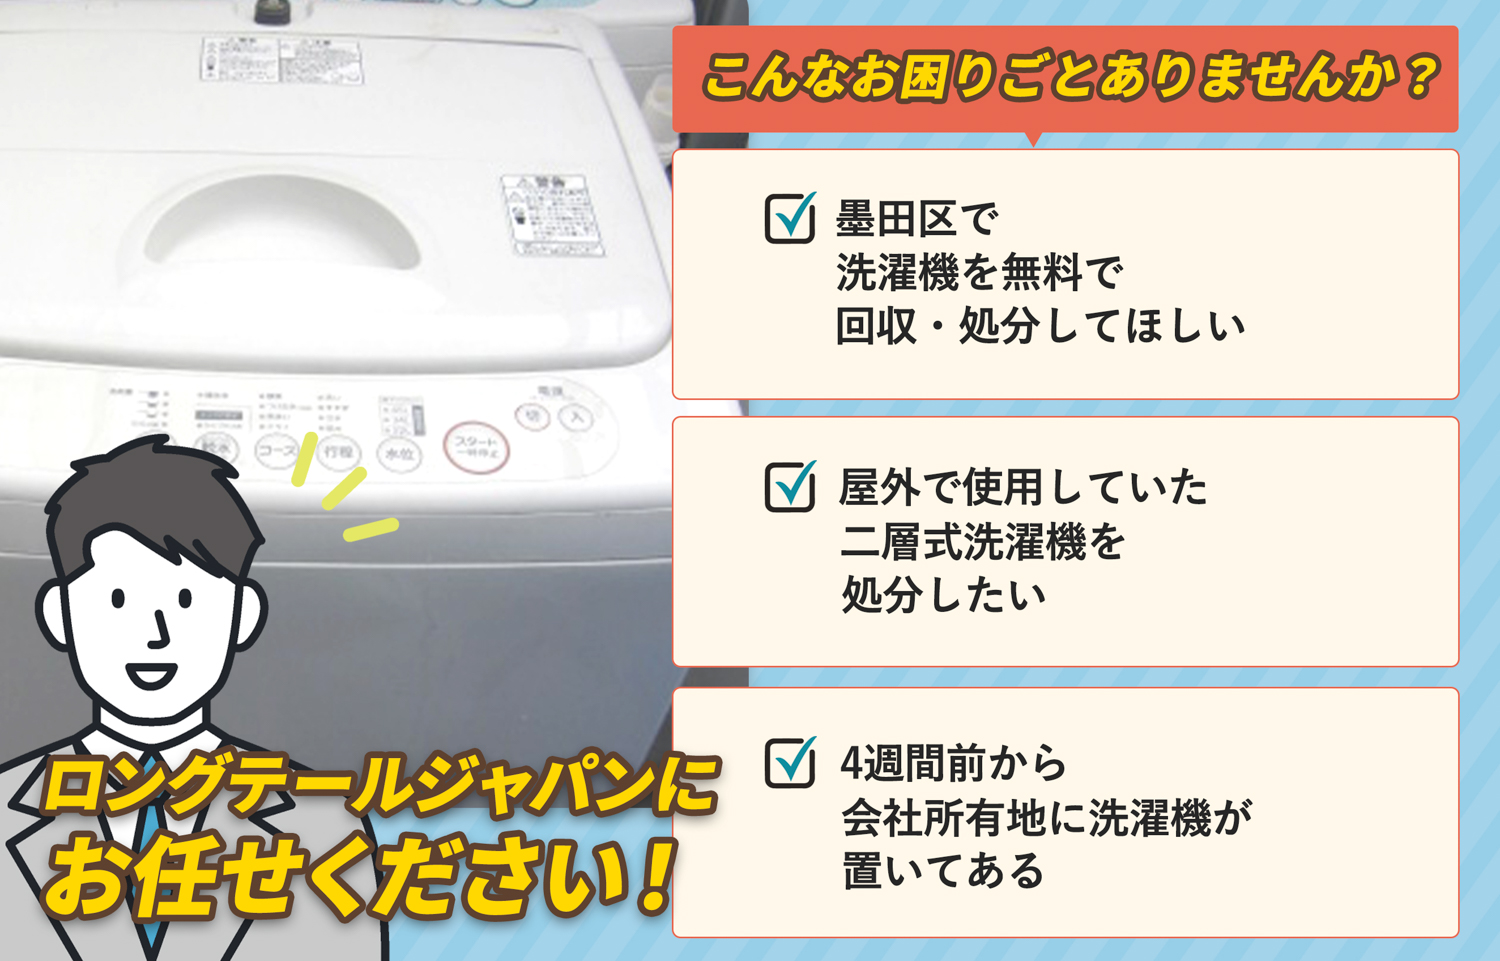 墨田区でこんな洗濯機の処分にお困りでしたら洗濯機無料回収処分隊がお手伝いします。